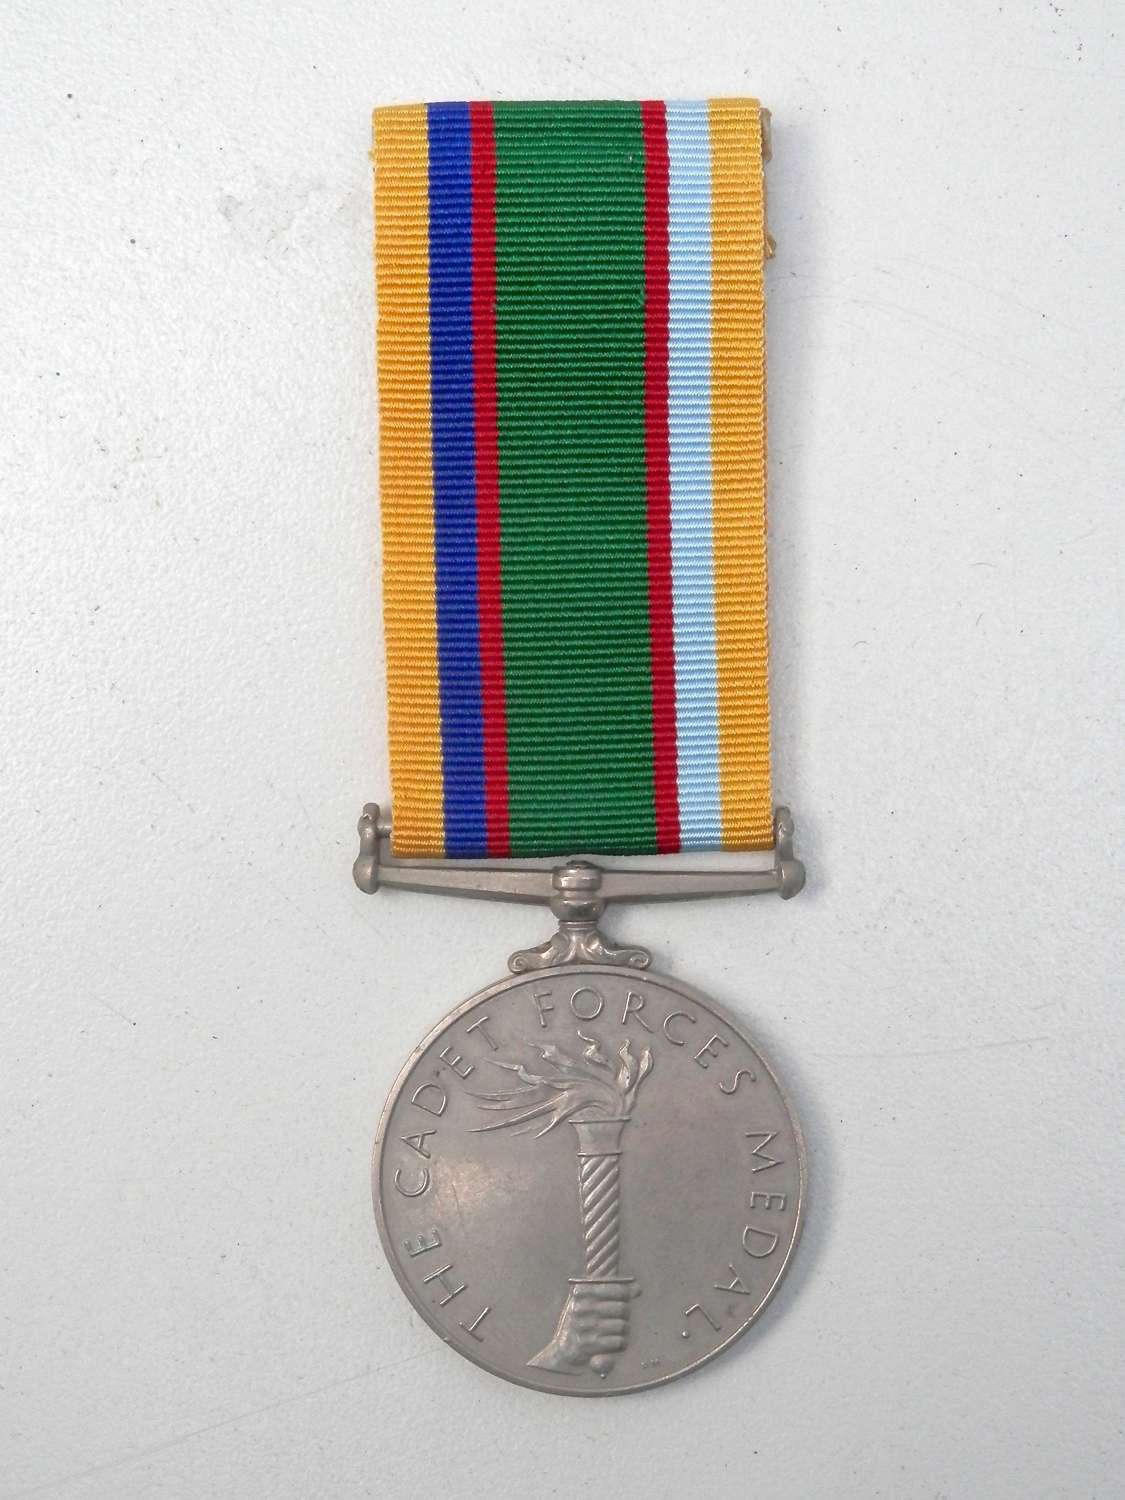 RAF  ATC cadet forces medal